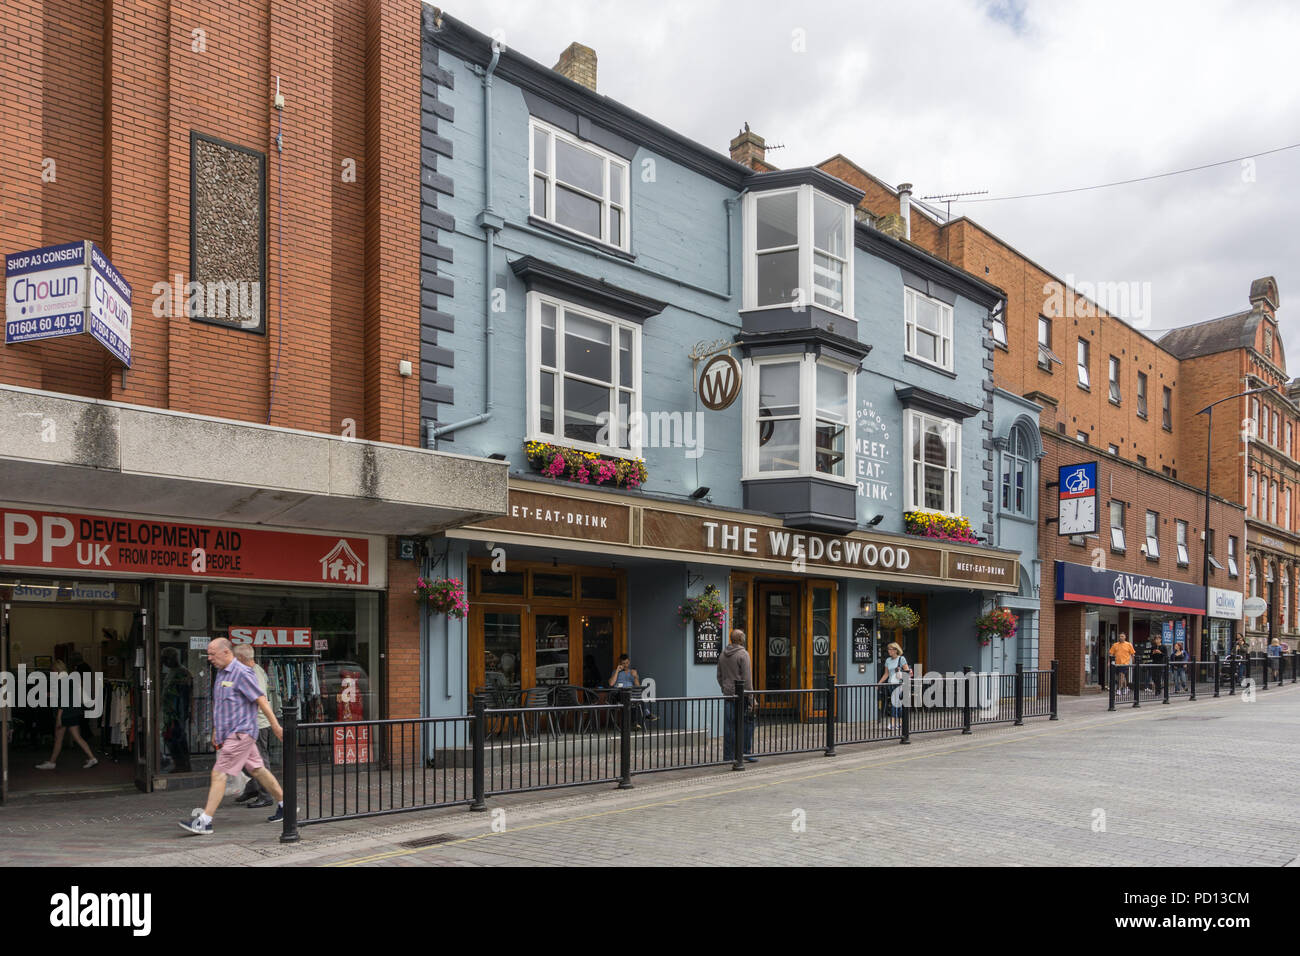 Unità di vendita al dettaglio su Abington Street, la principale arteria del centro città, Northampton, Regno Unito. Foto Stock